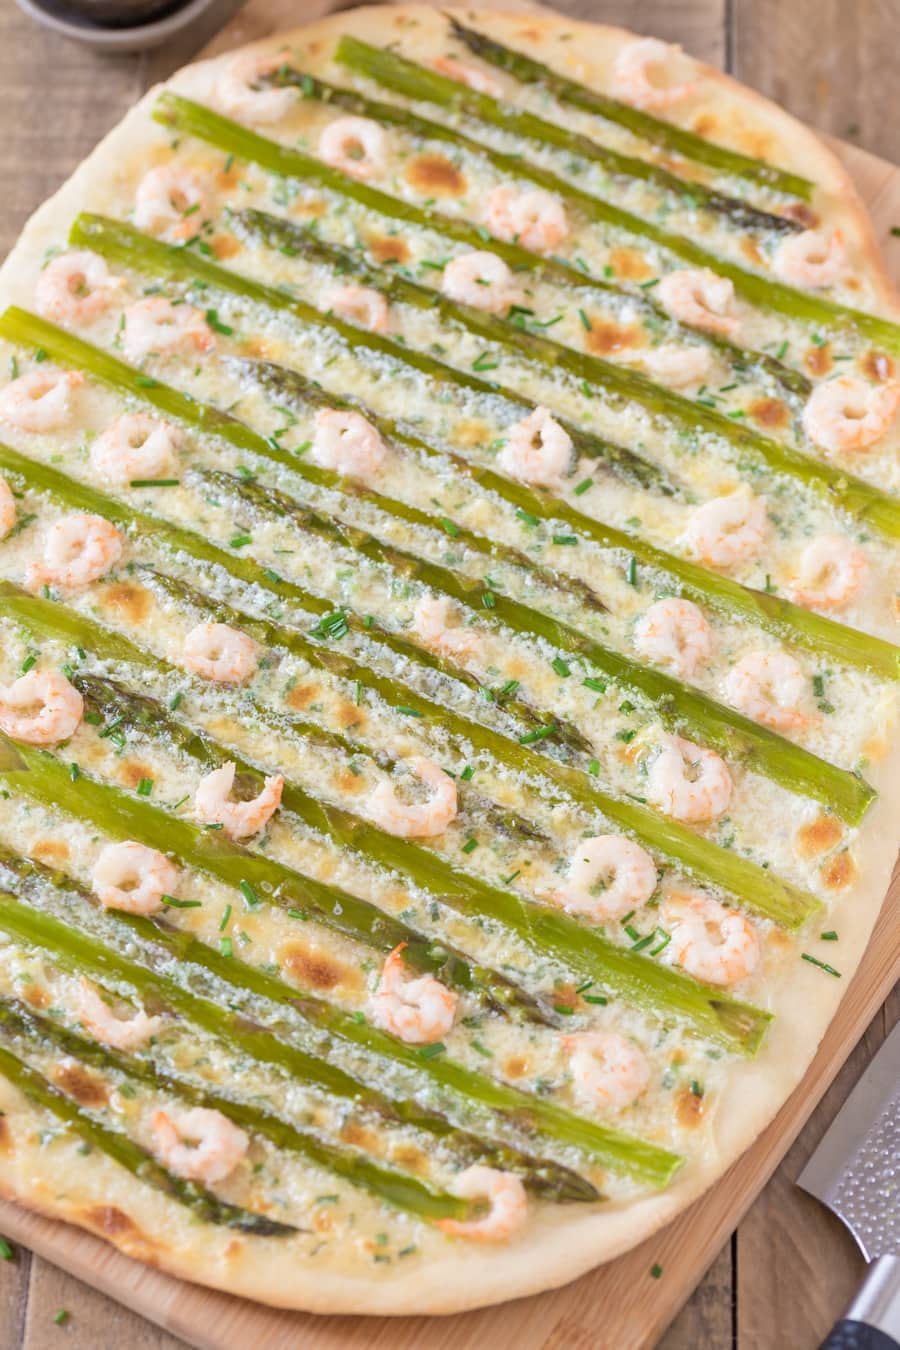 Shrimp asparagus flatbread with zesty mascarpone sauce.